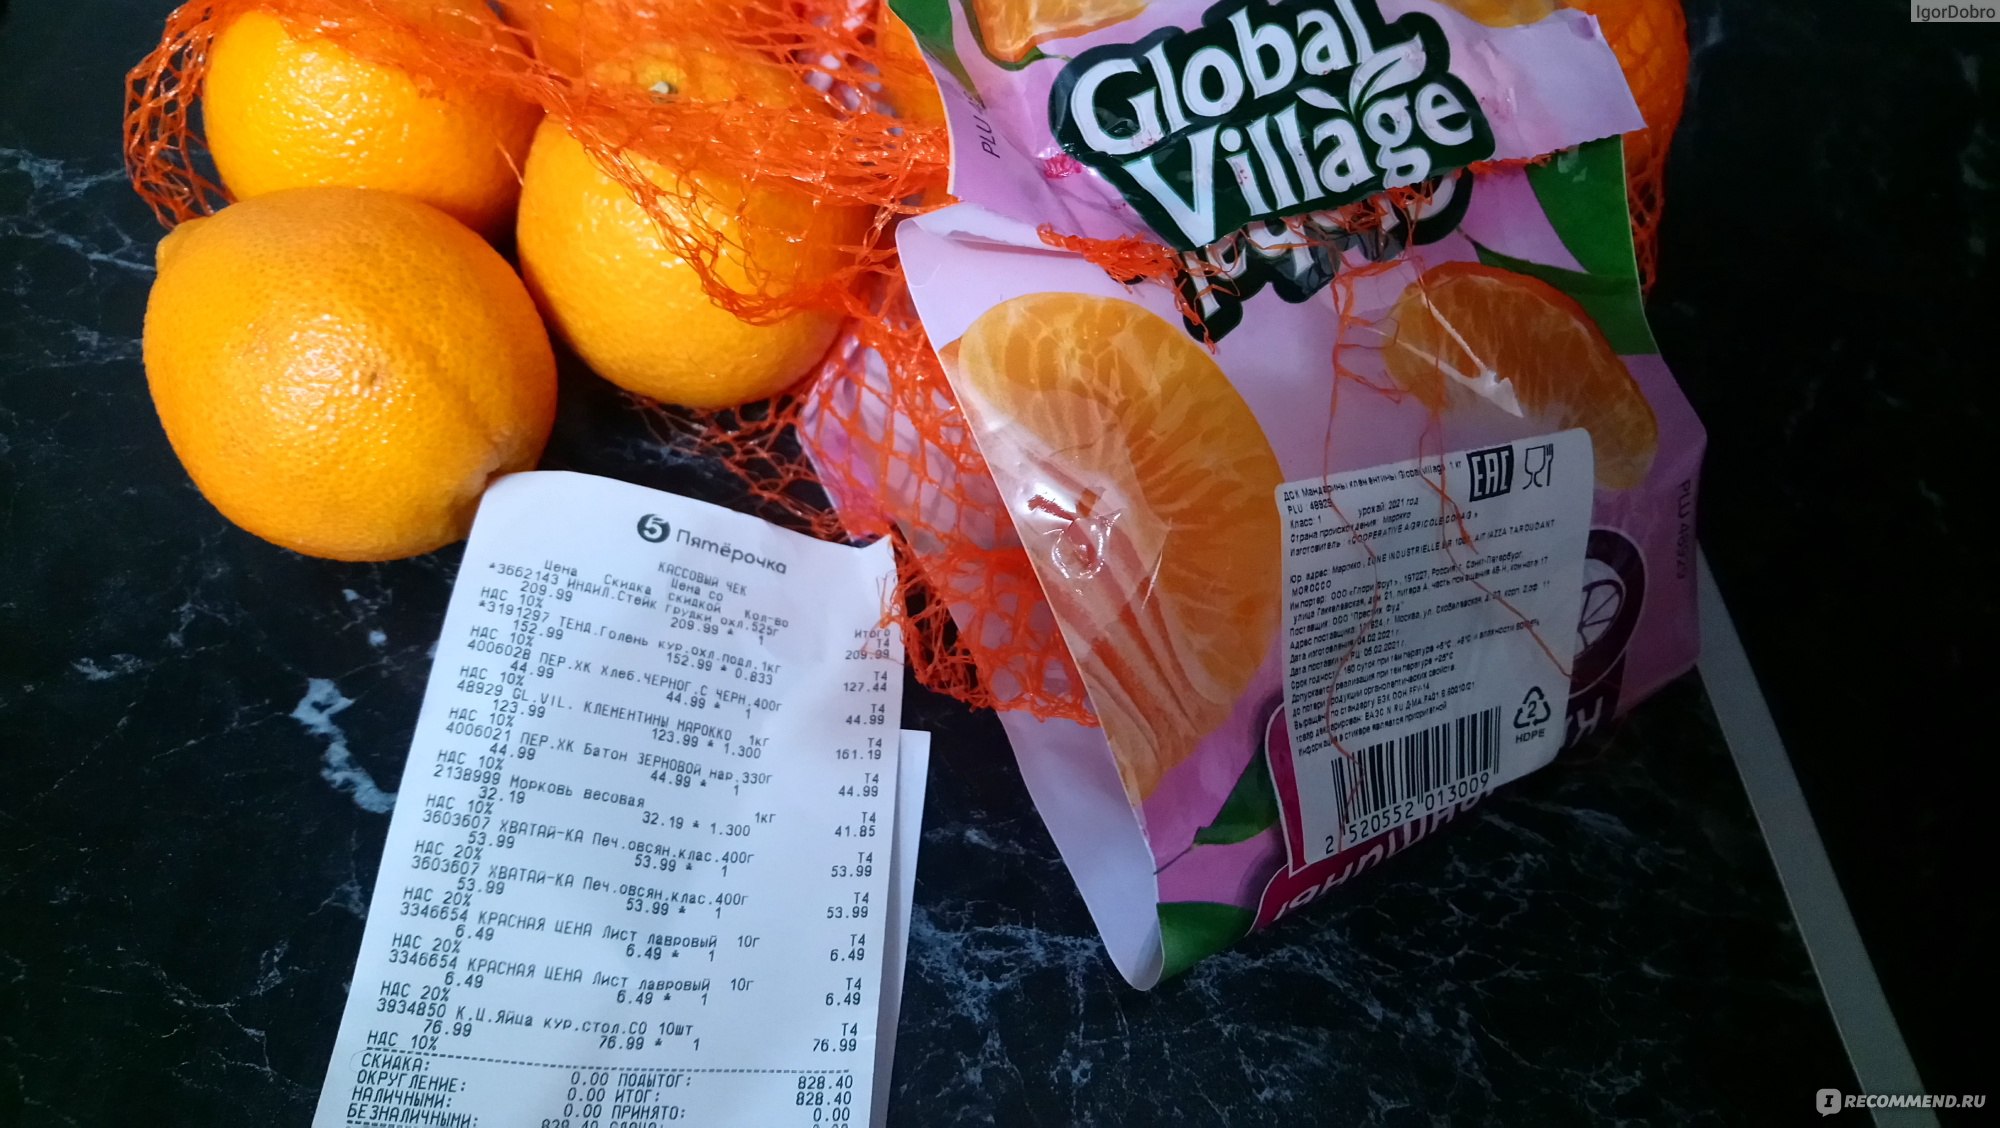 Мама купила несколько килограммов мандаринов. Мандарины Global Village. Мандарины Global Village отборные. Глобал Виладж сетка мандарин. Мандарины фасованные Глобал.